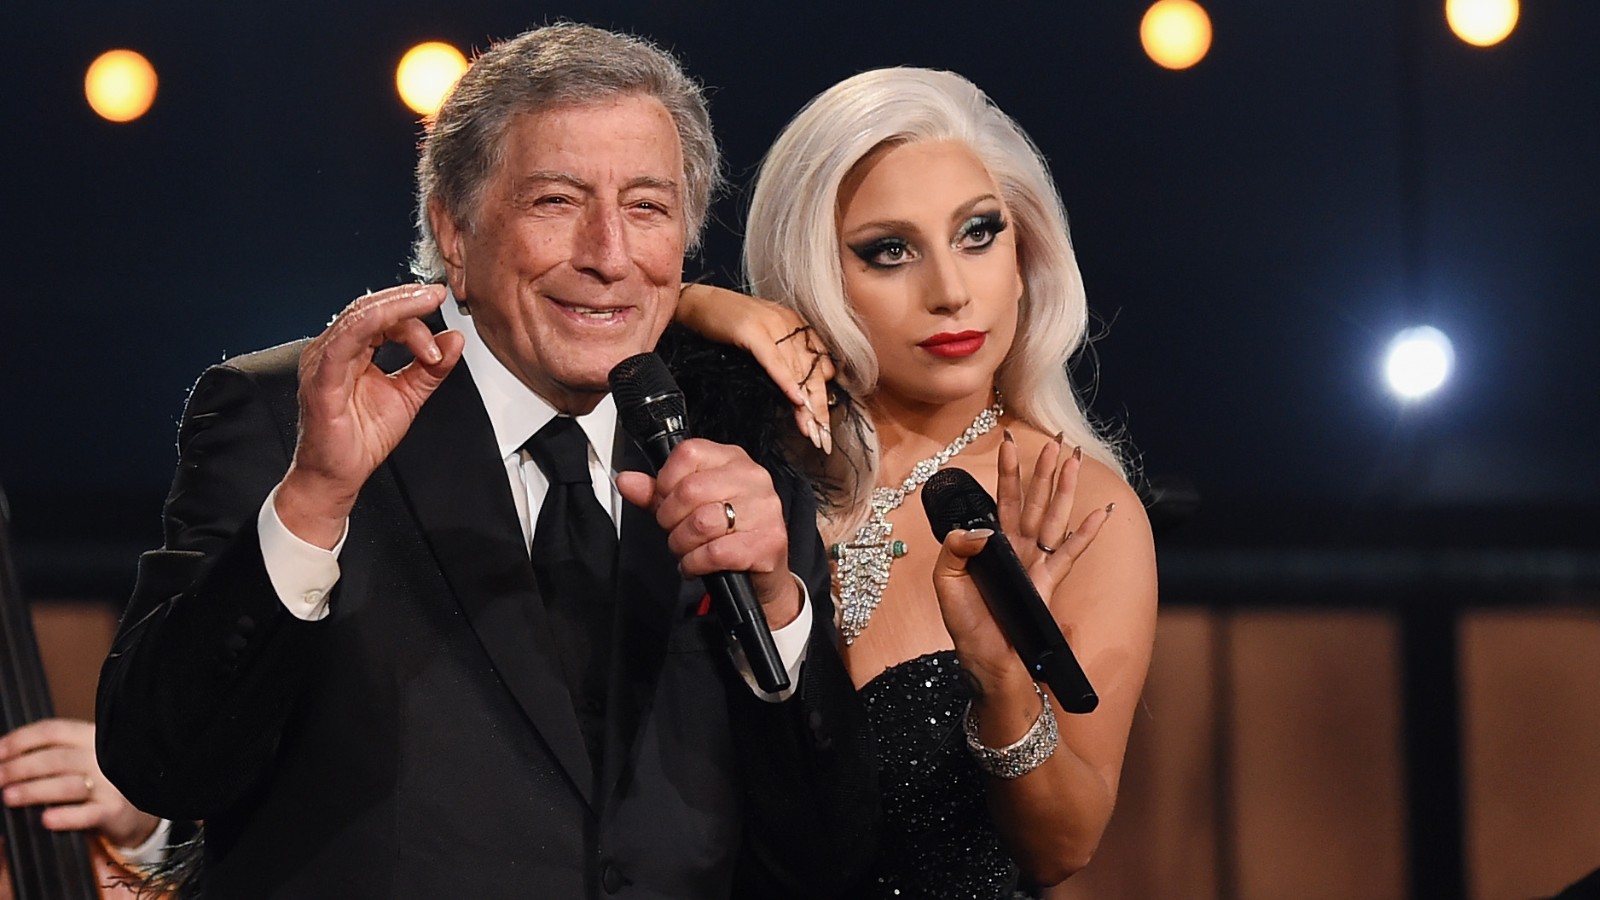 Tony Bennett and Lady Gaga at the Grammy Awards.